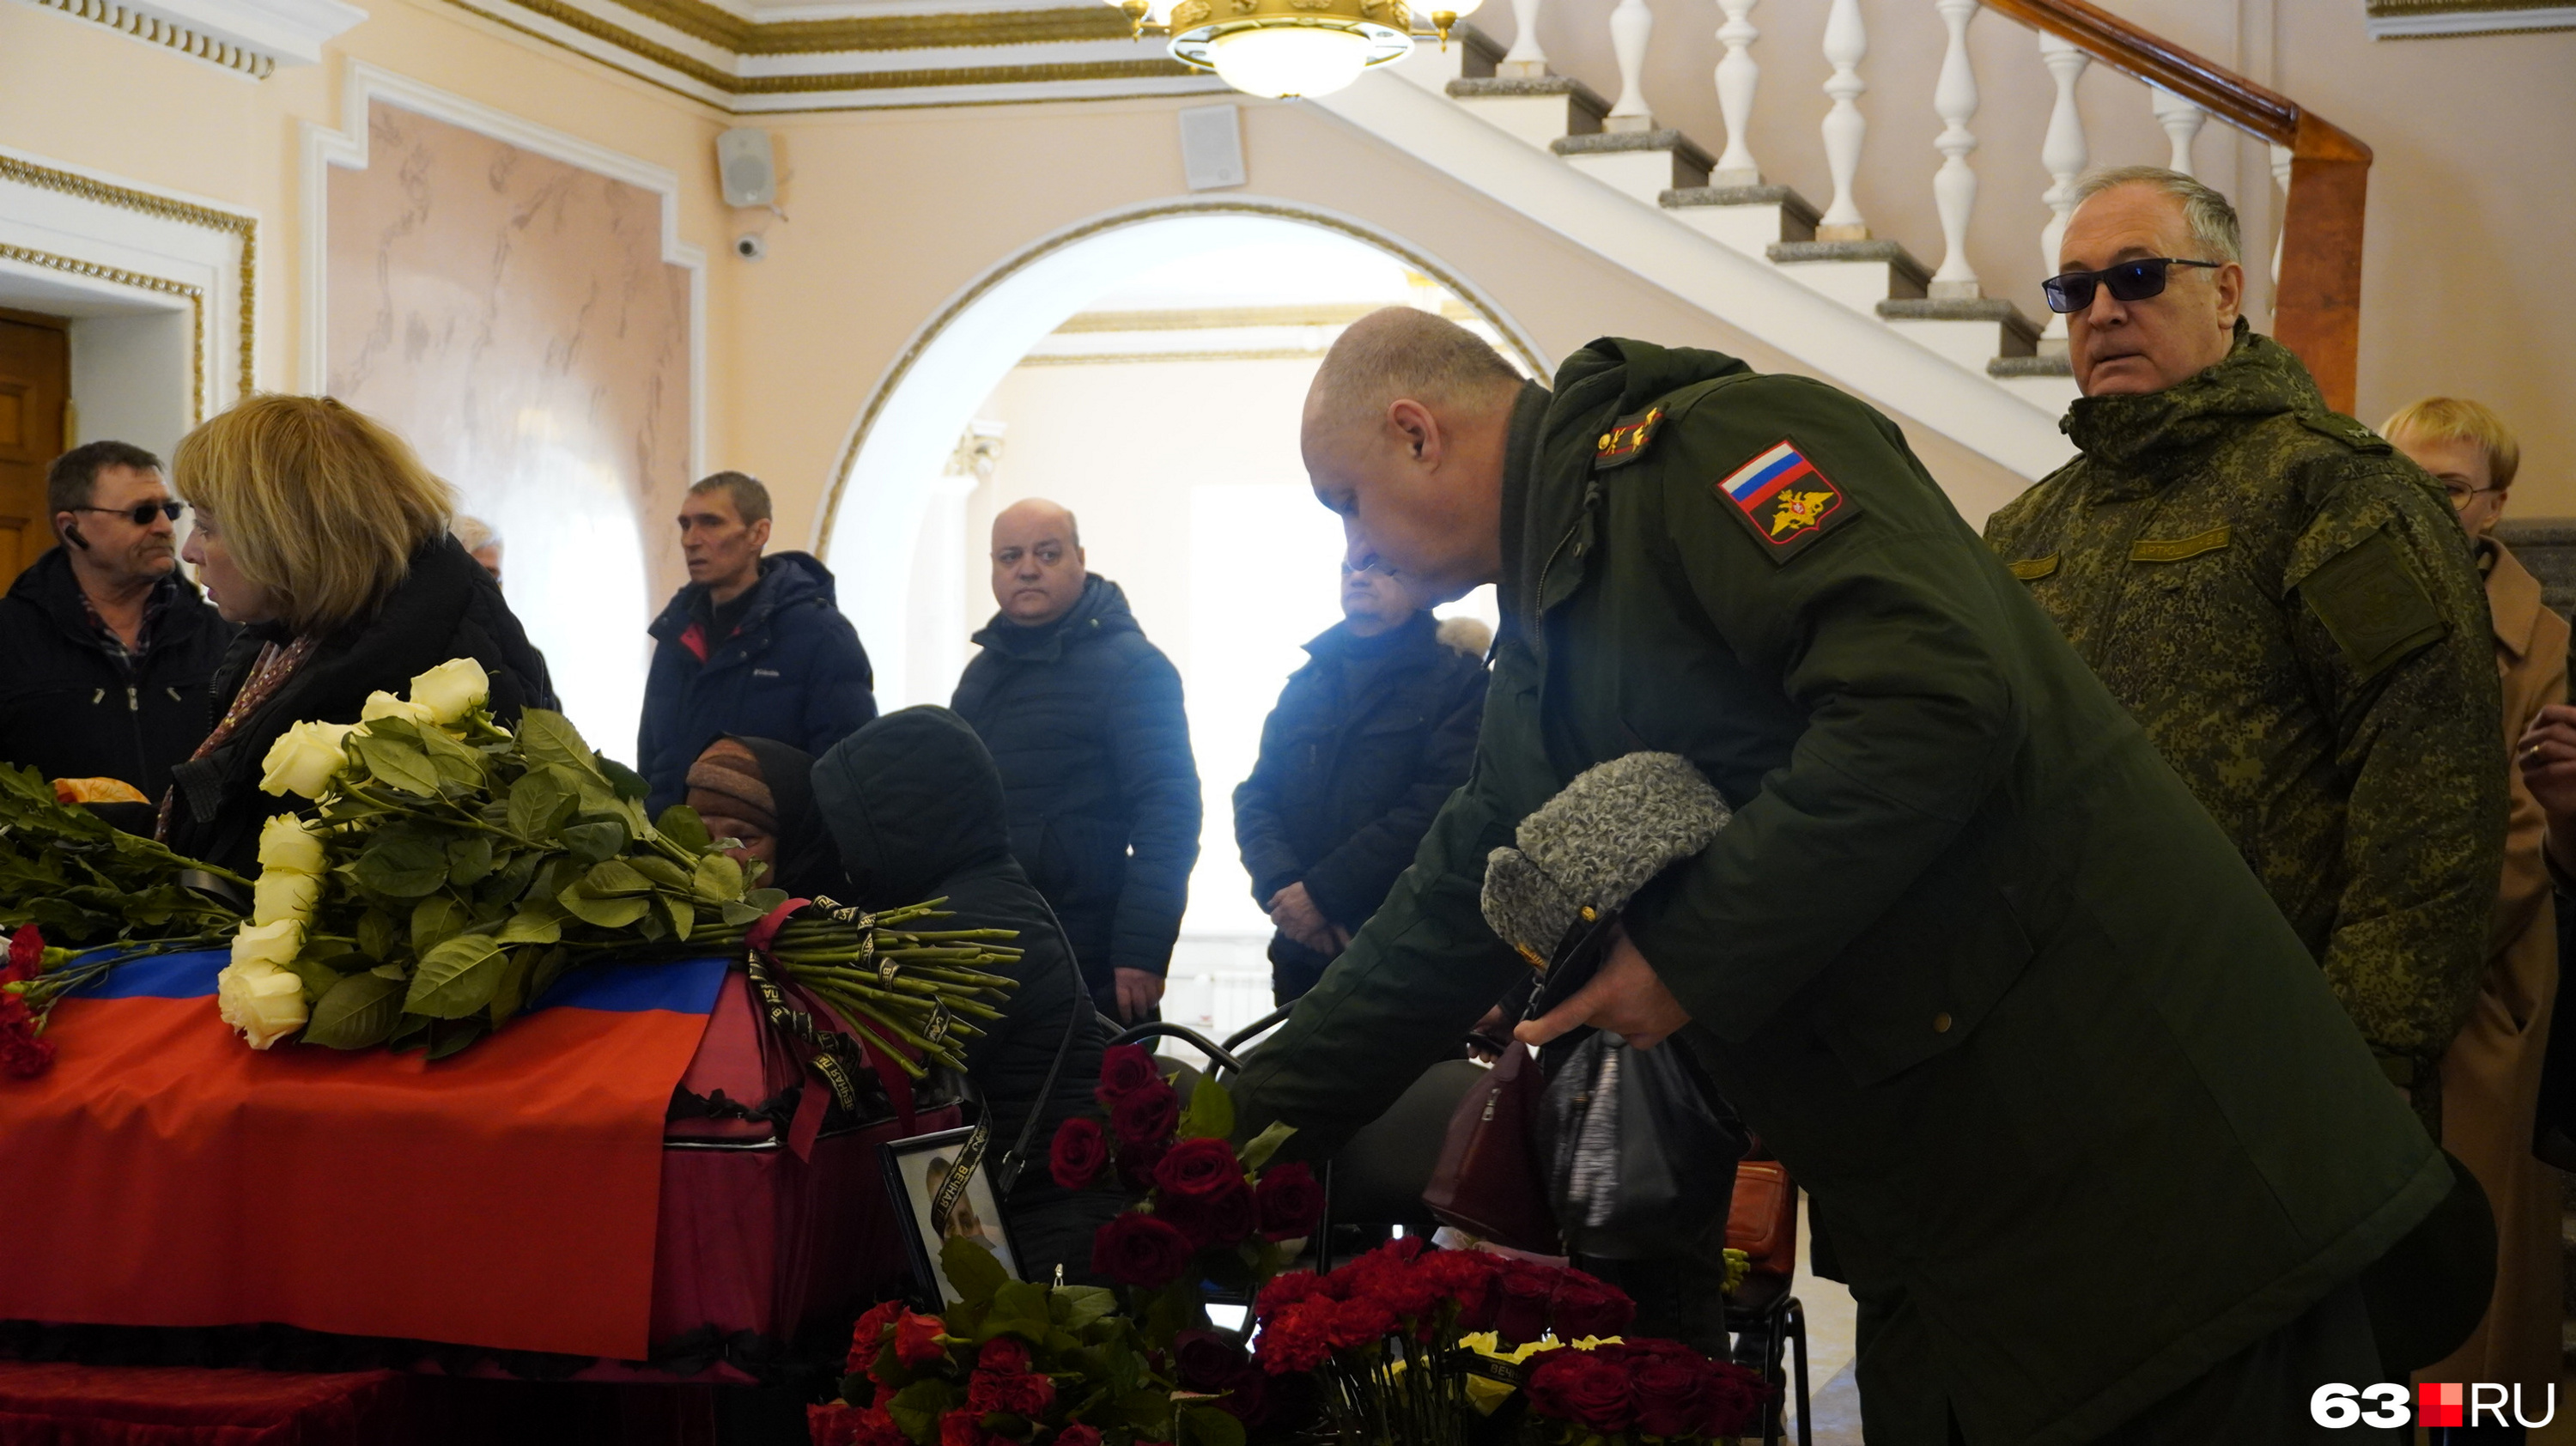 Похороны солдата погибшего на украине. Похороны военнослужащего. Похороны военнослужащего погибшего на Украине 2022.